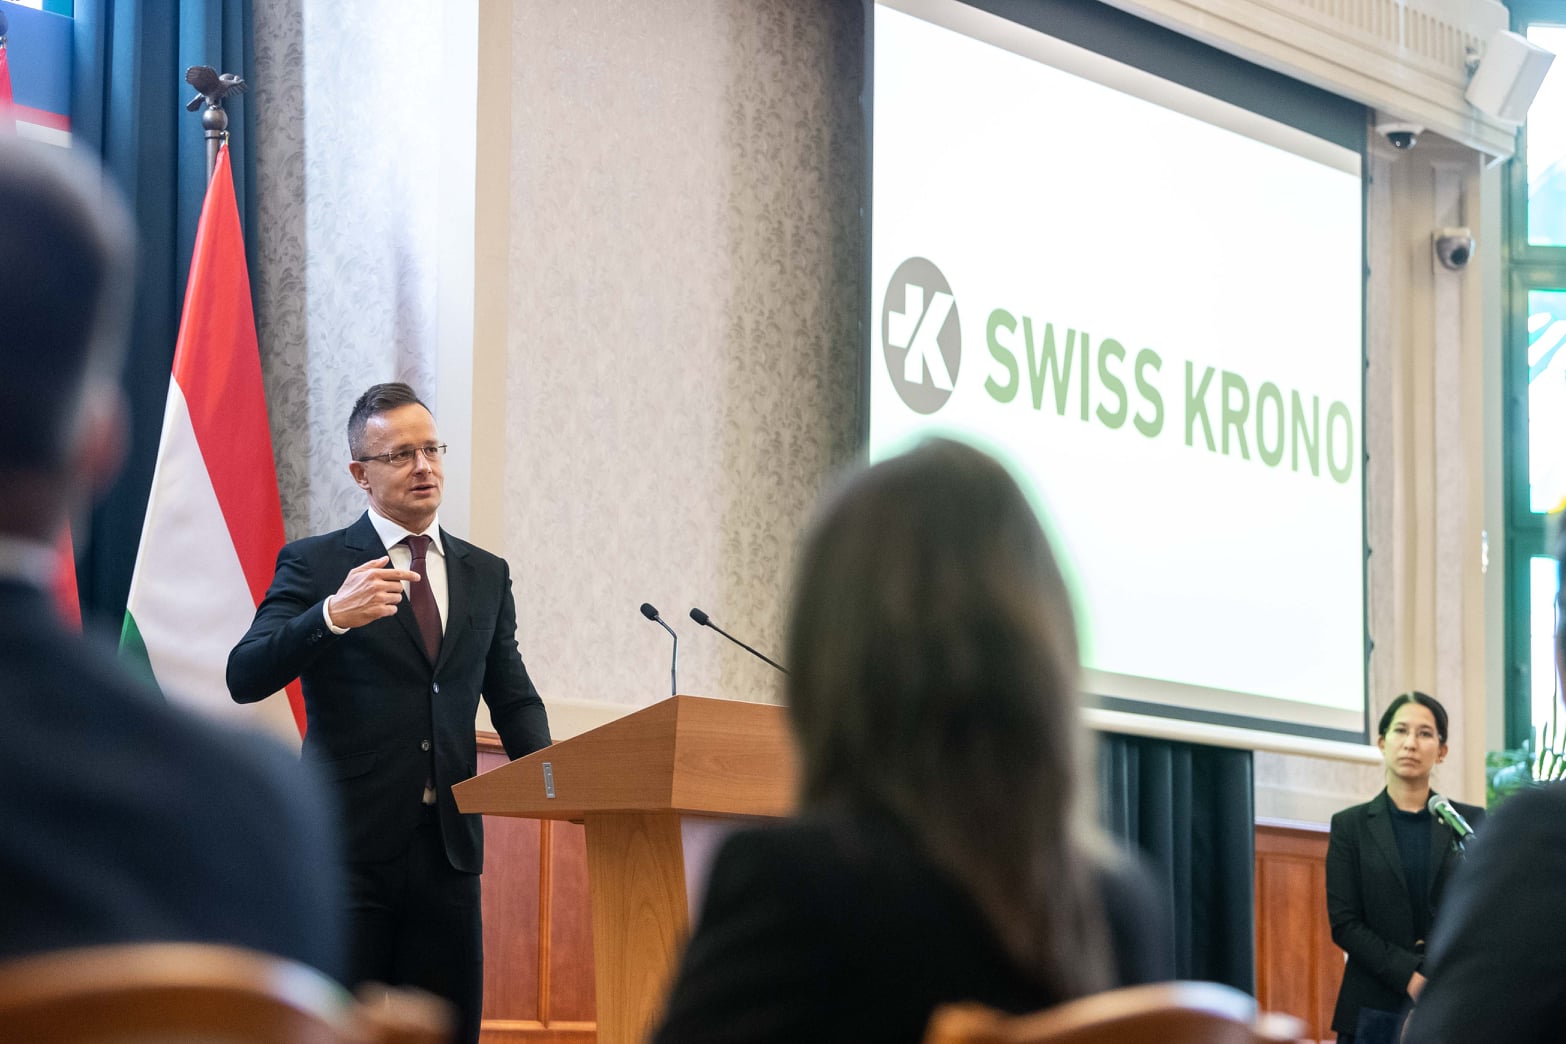 Swiss Krono Plans Expansion in Vásárosnamény